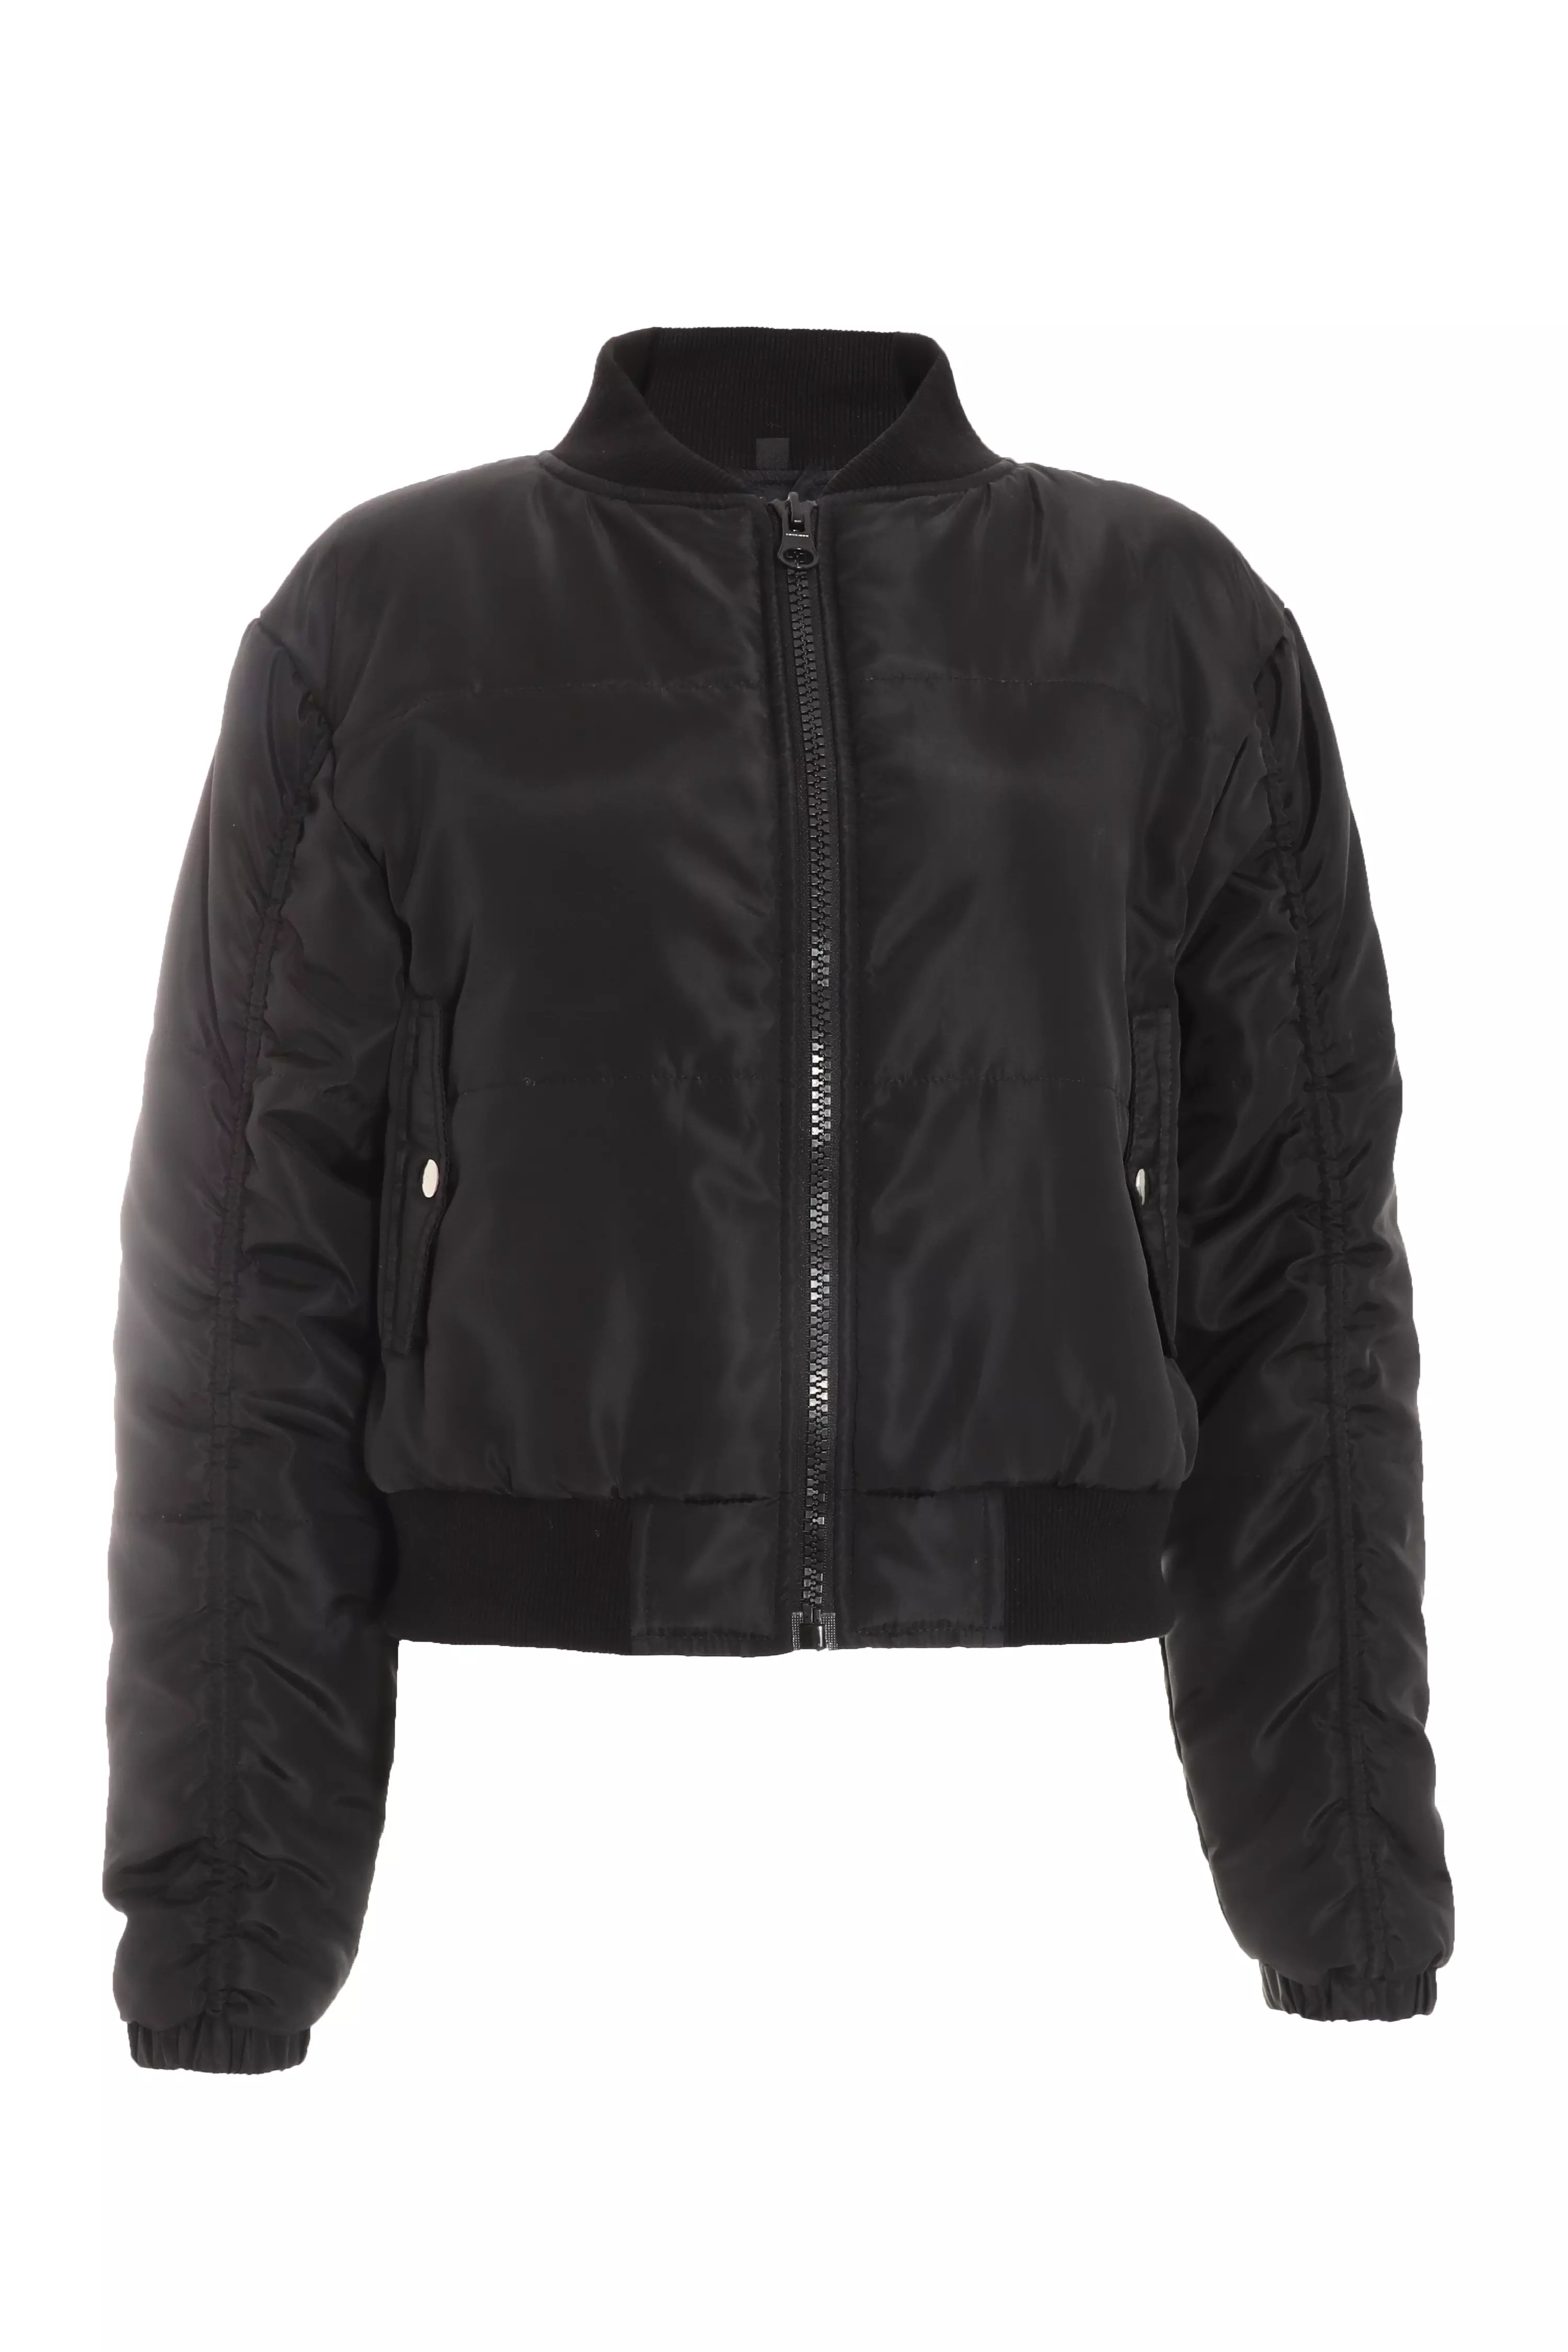 Black Ruched Sleeve Bomber Jacket - QUIZ Clothing